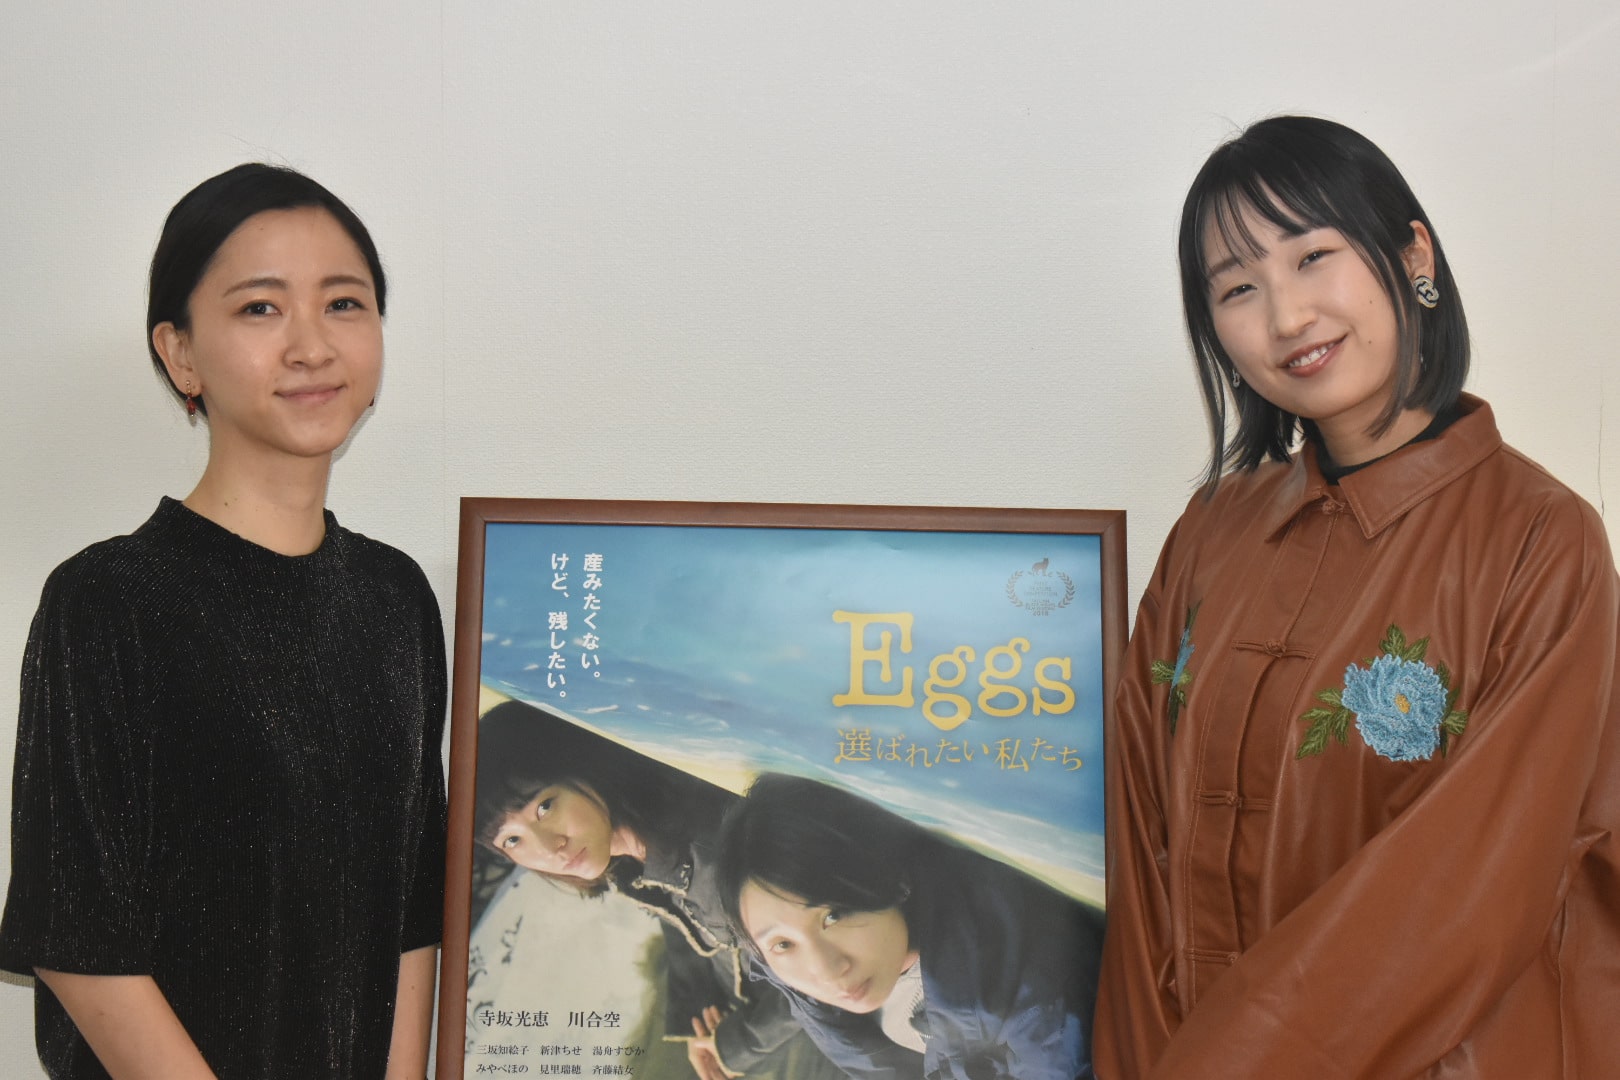 映画『Eggs 選ばれたい私たち』寺坂光恵、川合空インタビュー